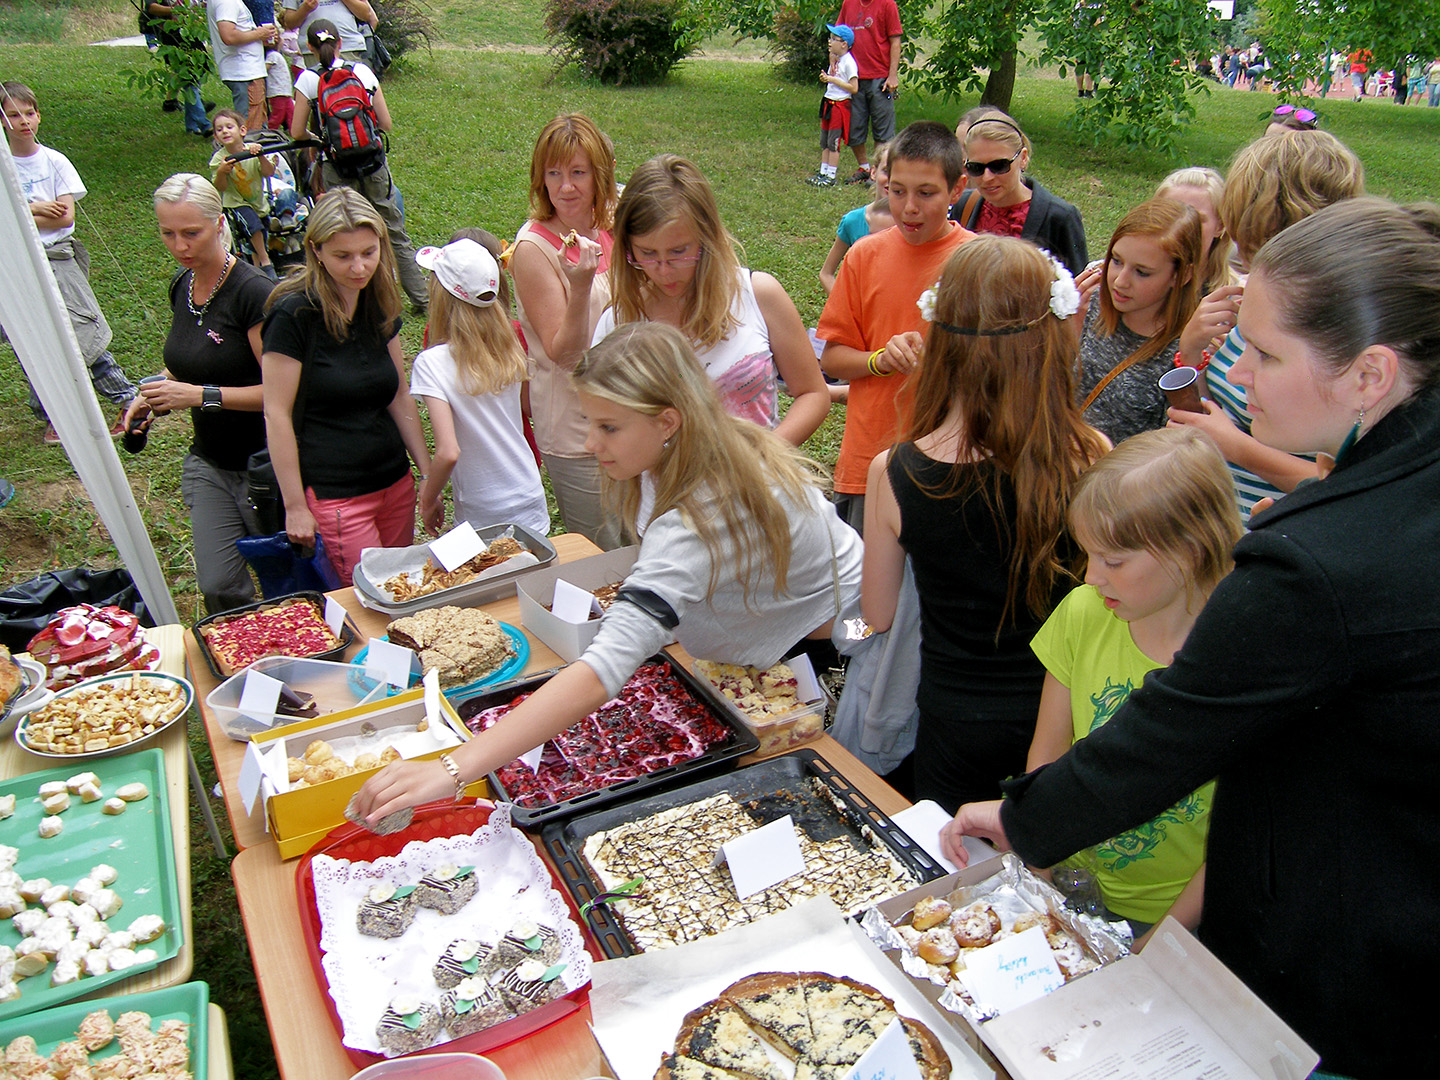 Zahradní slavnost - rozloučení se školním rokem. ZŠ Heyrovského 32, Brno-Bystrc, 26. června 2014